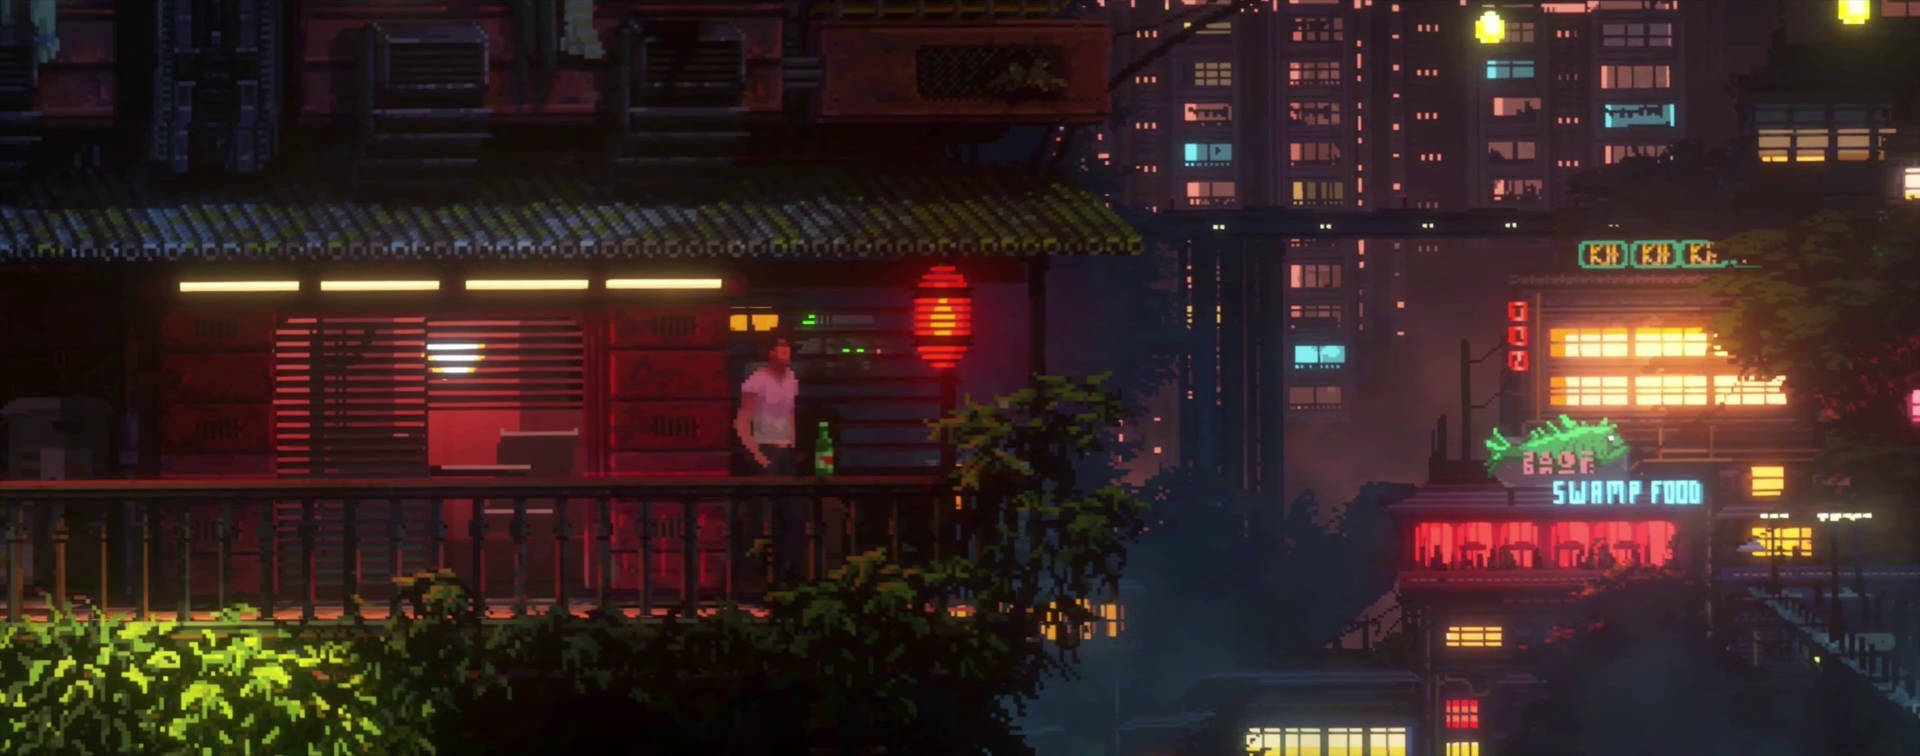 Ultrawide Cyberpunk Male On Balcony Background